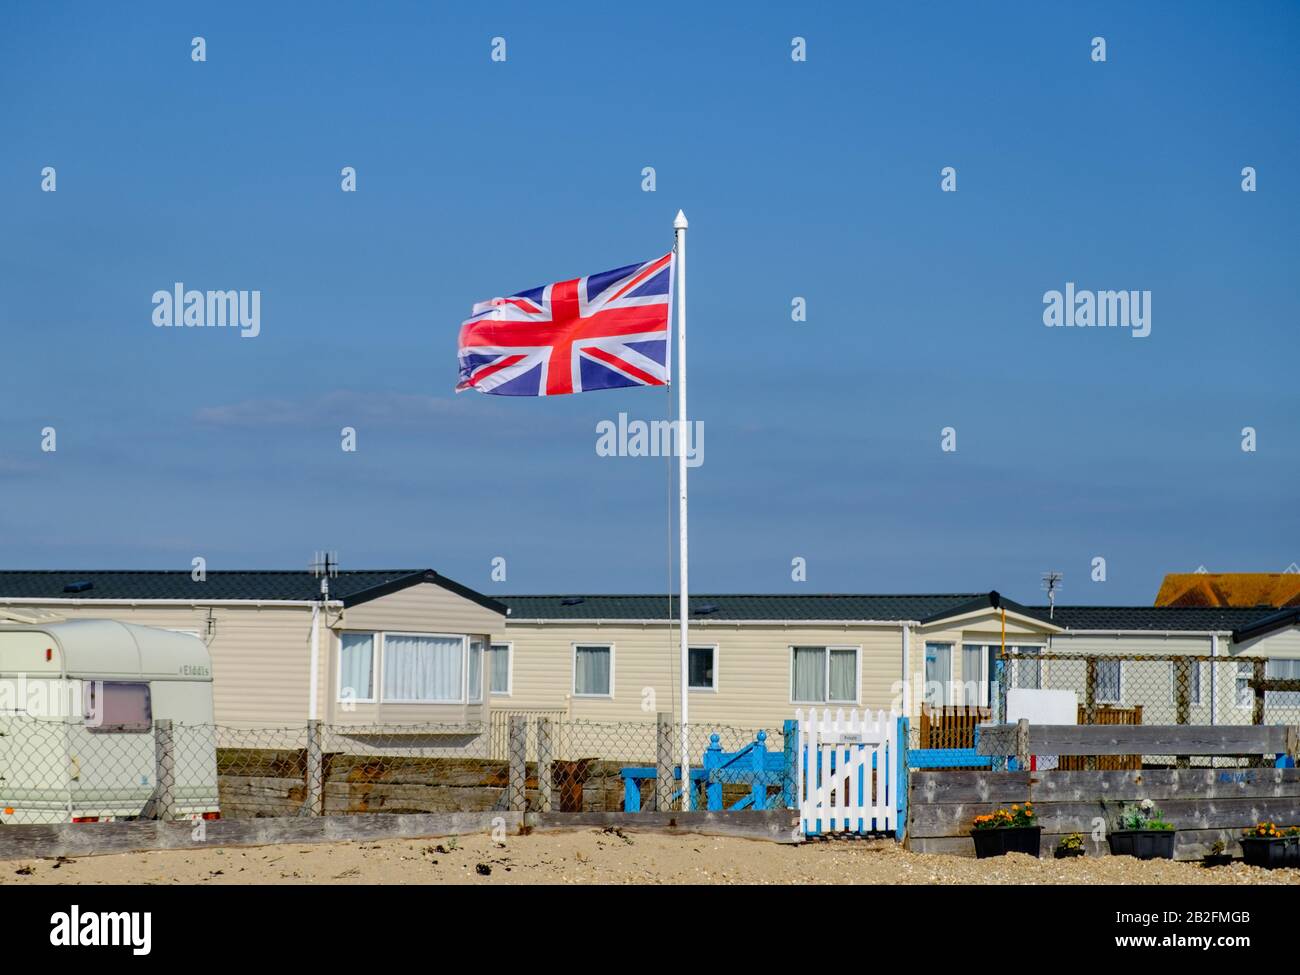 Caravanes blanches statiques derrière une clôture avec plage de galets et drapeau britannique sur le poteau au West Sands Caravan Park, Bunn Leisure, Selsey, West Sussex, Angleterre. Banque D'Images